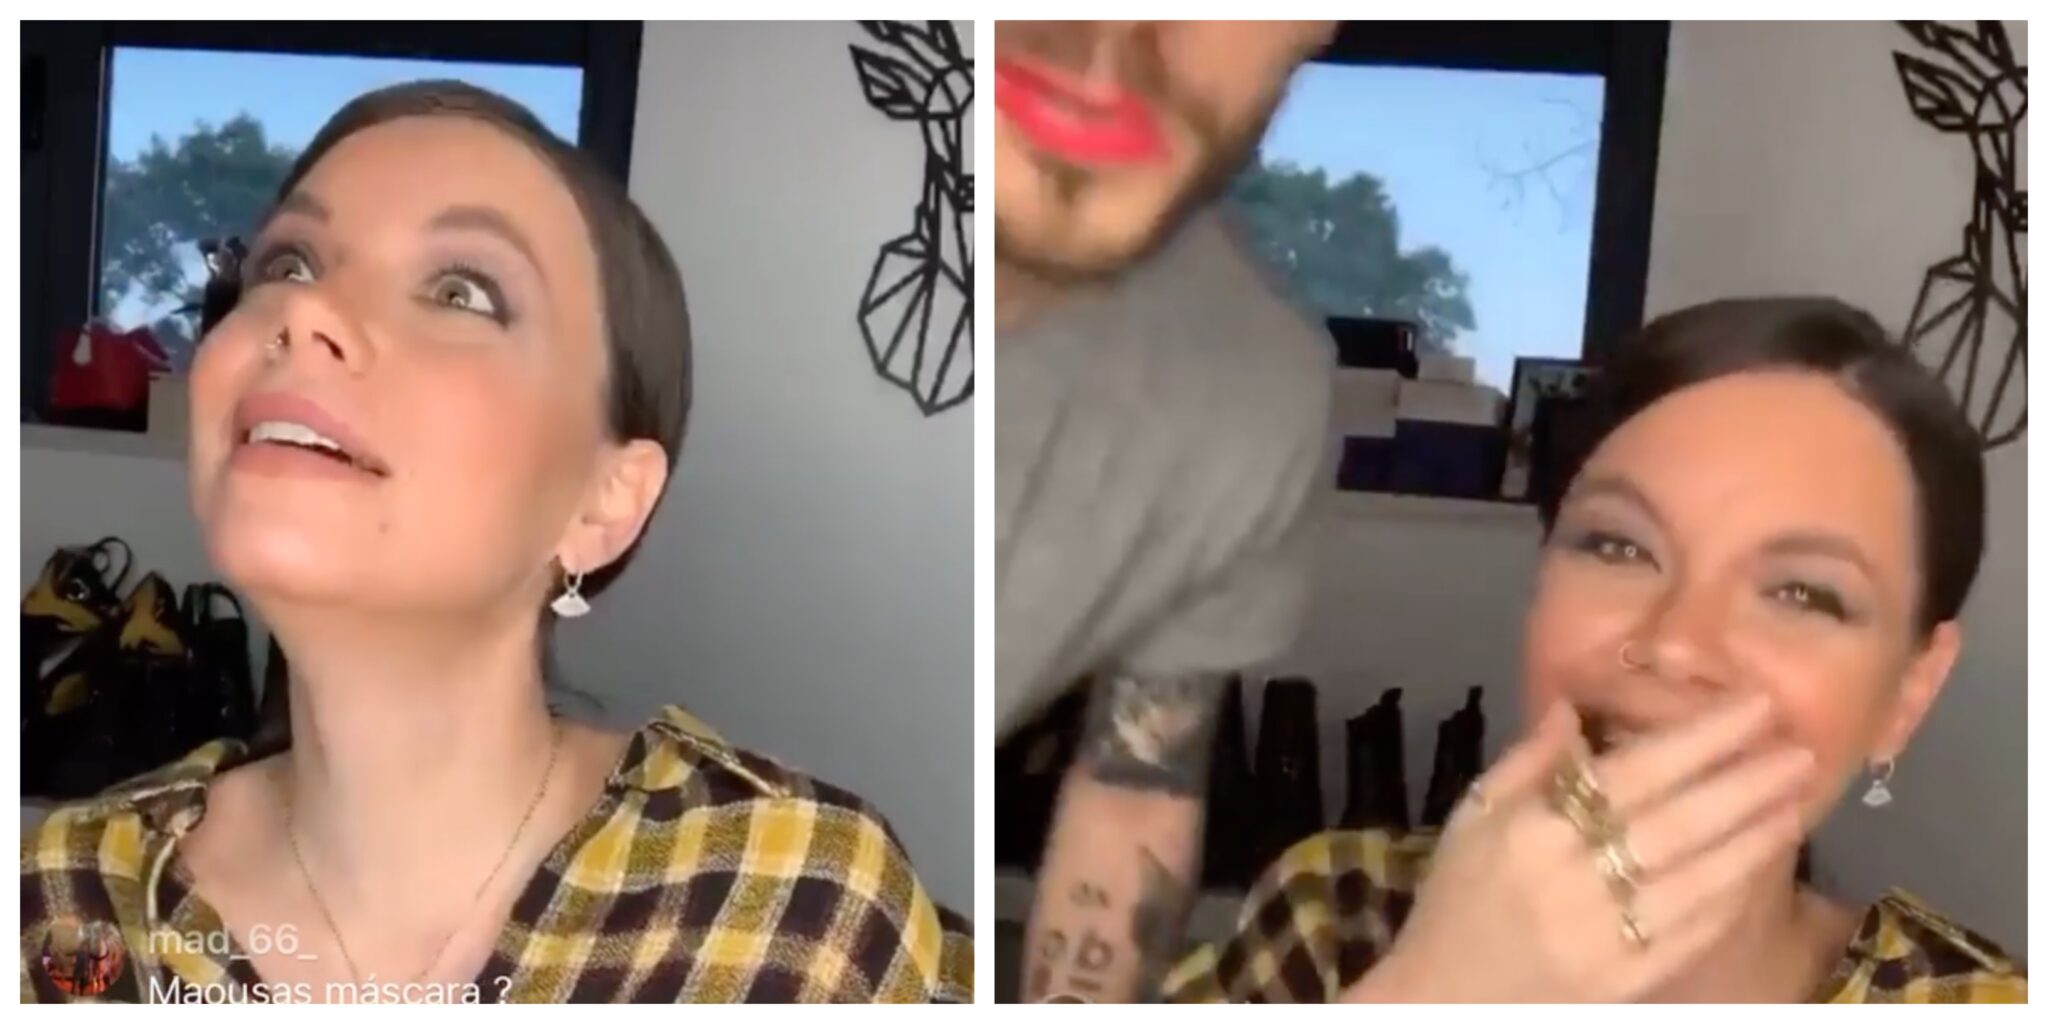 Mel Jordao Diogo Picarra Scaled Diogo Piçarra Assiste Ao Direto Da Namorada Sobre Maquilhagem E O Resultado É Hilariante